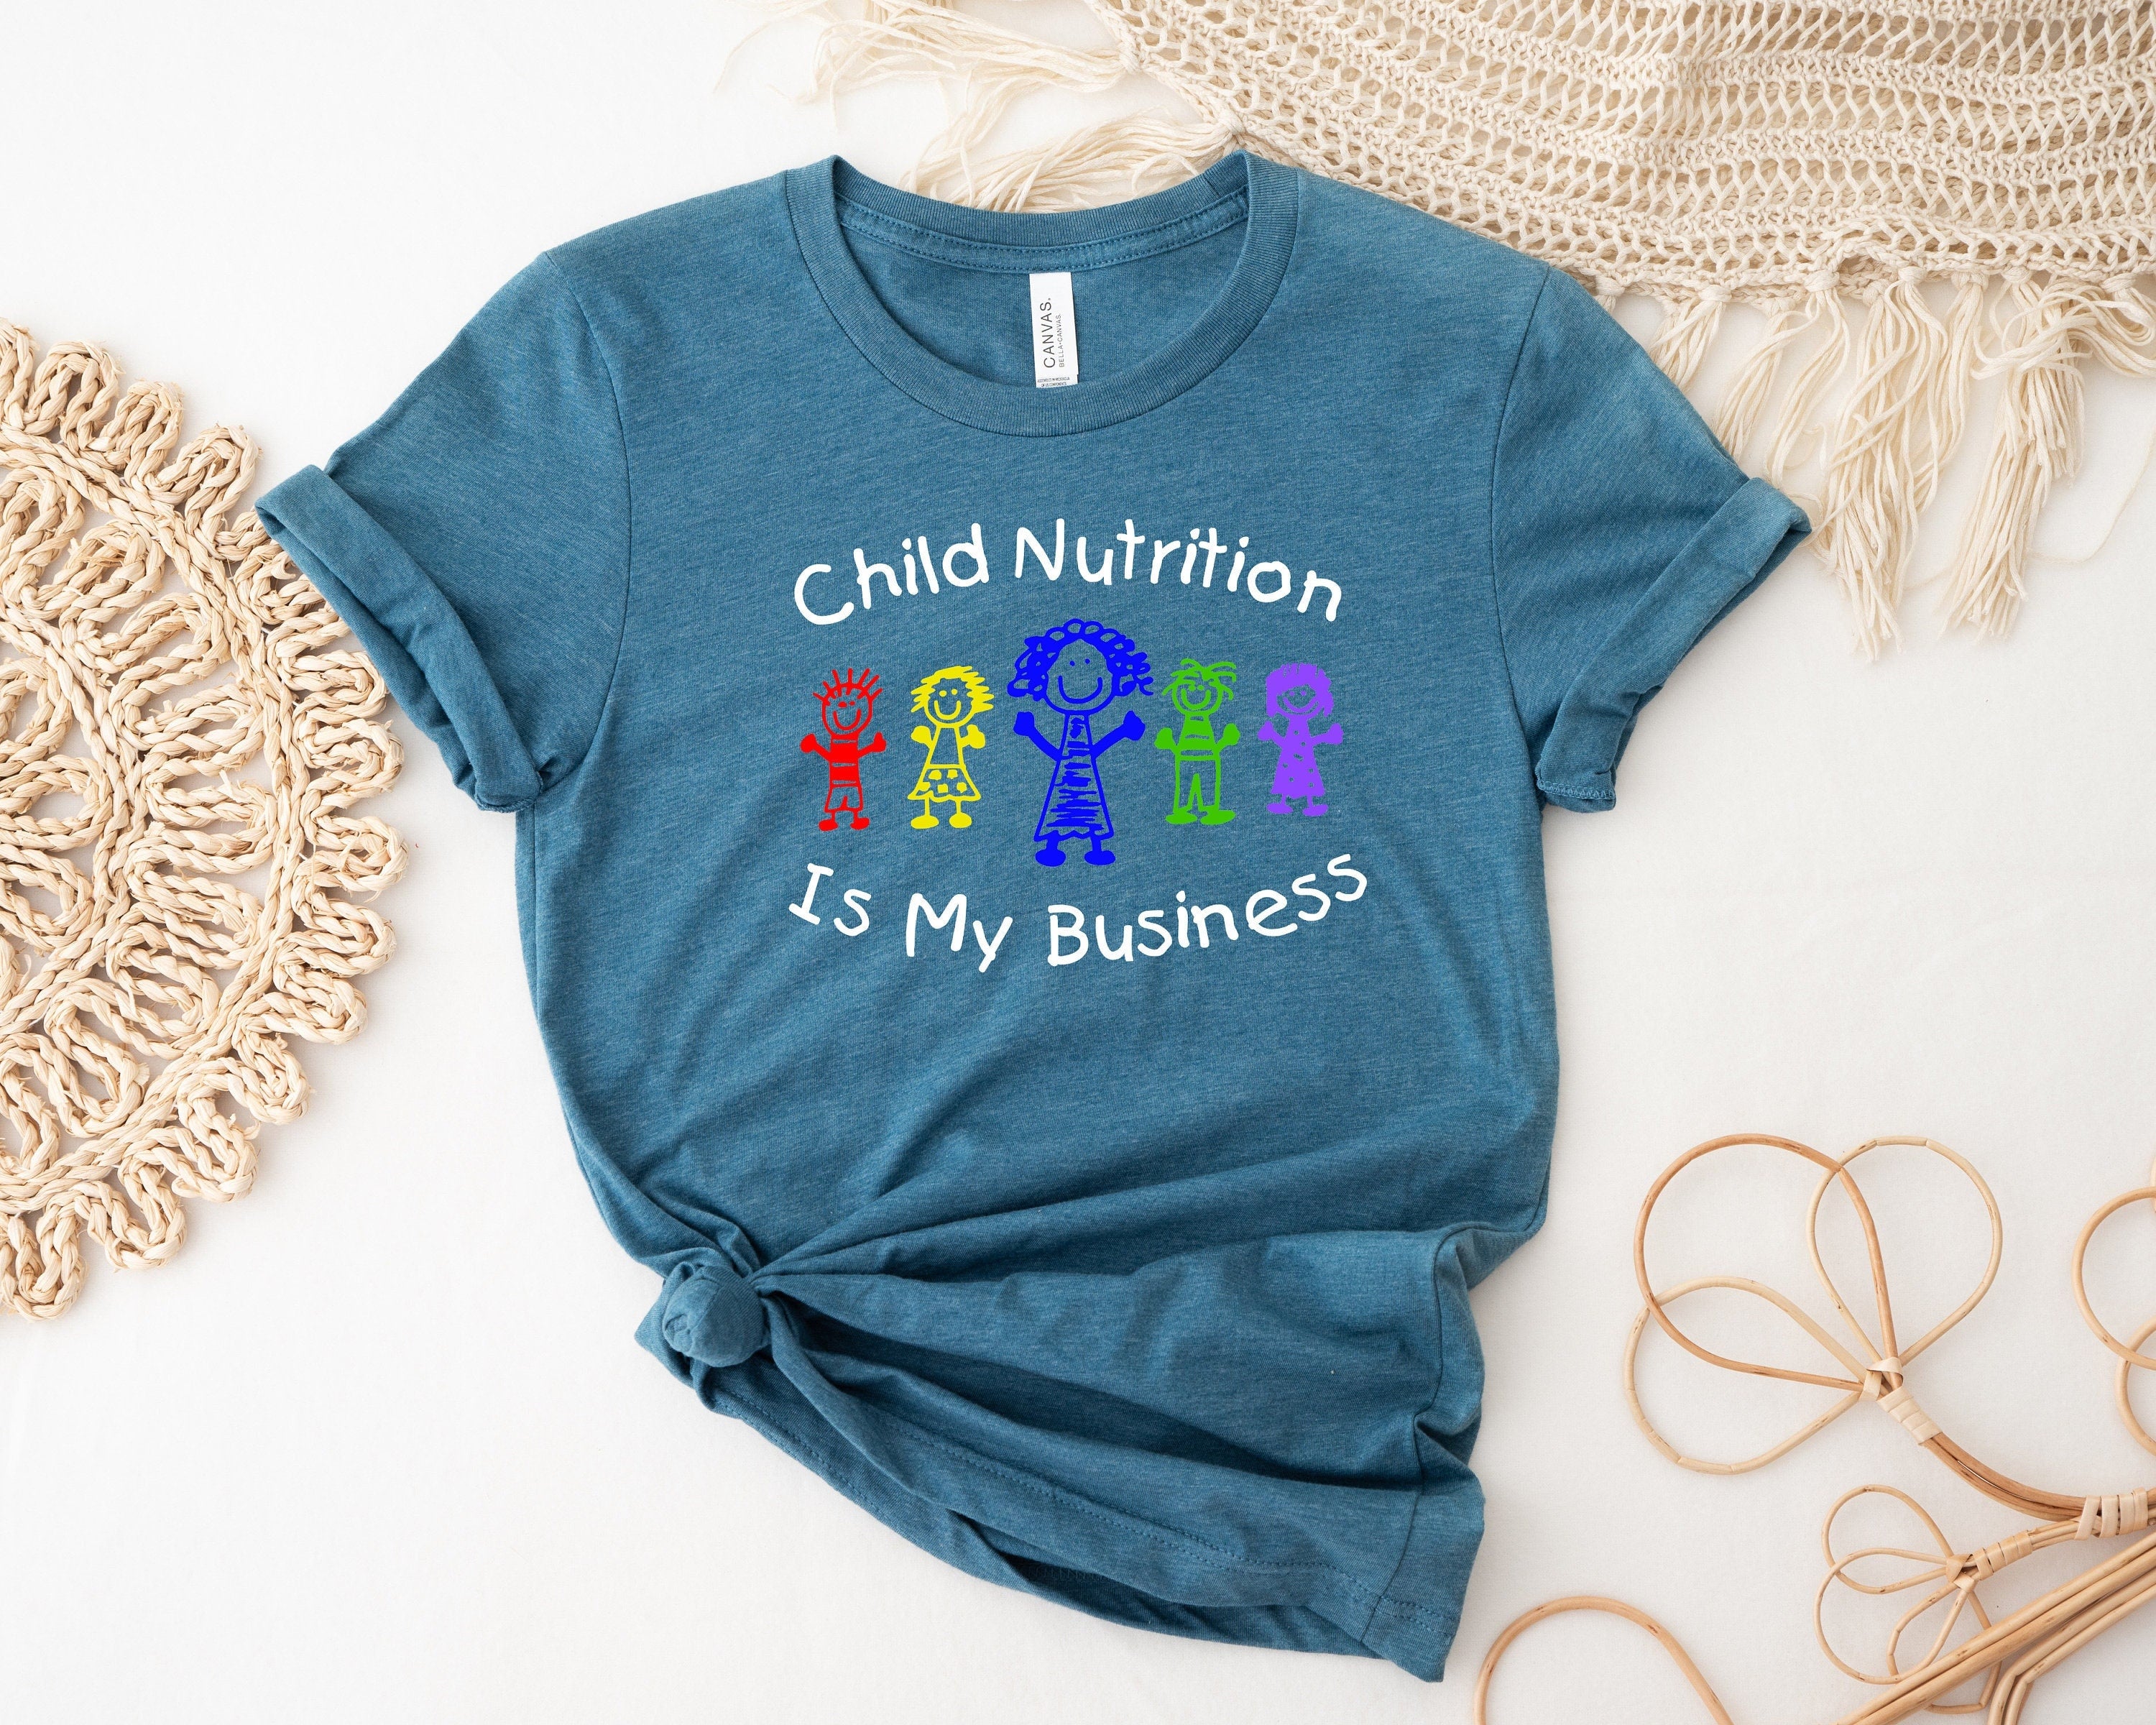 La nutrition infantile est ma chemise d’affaires